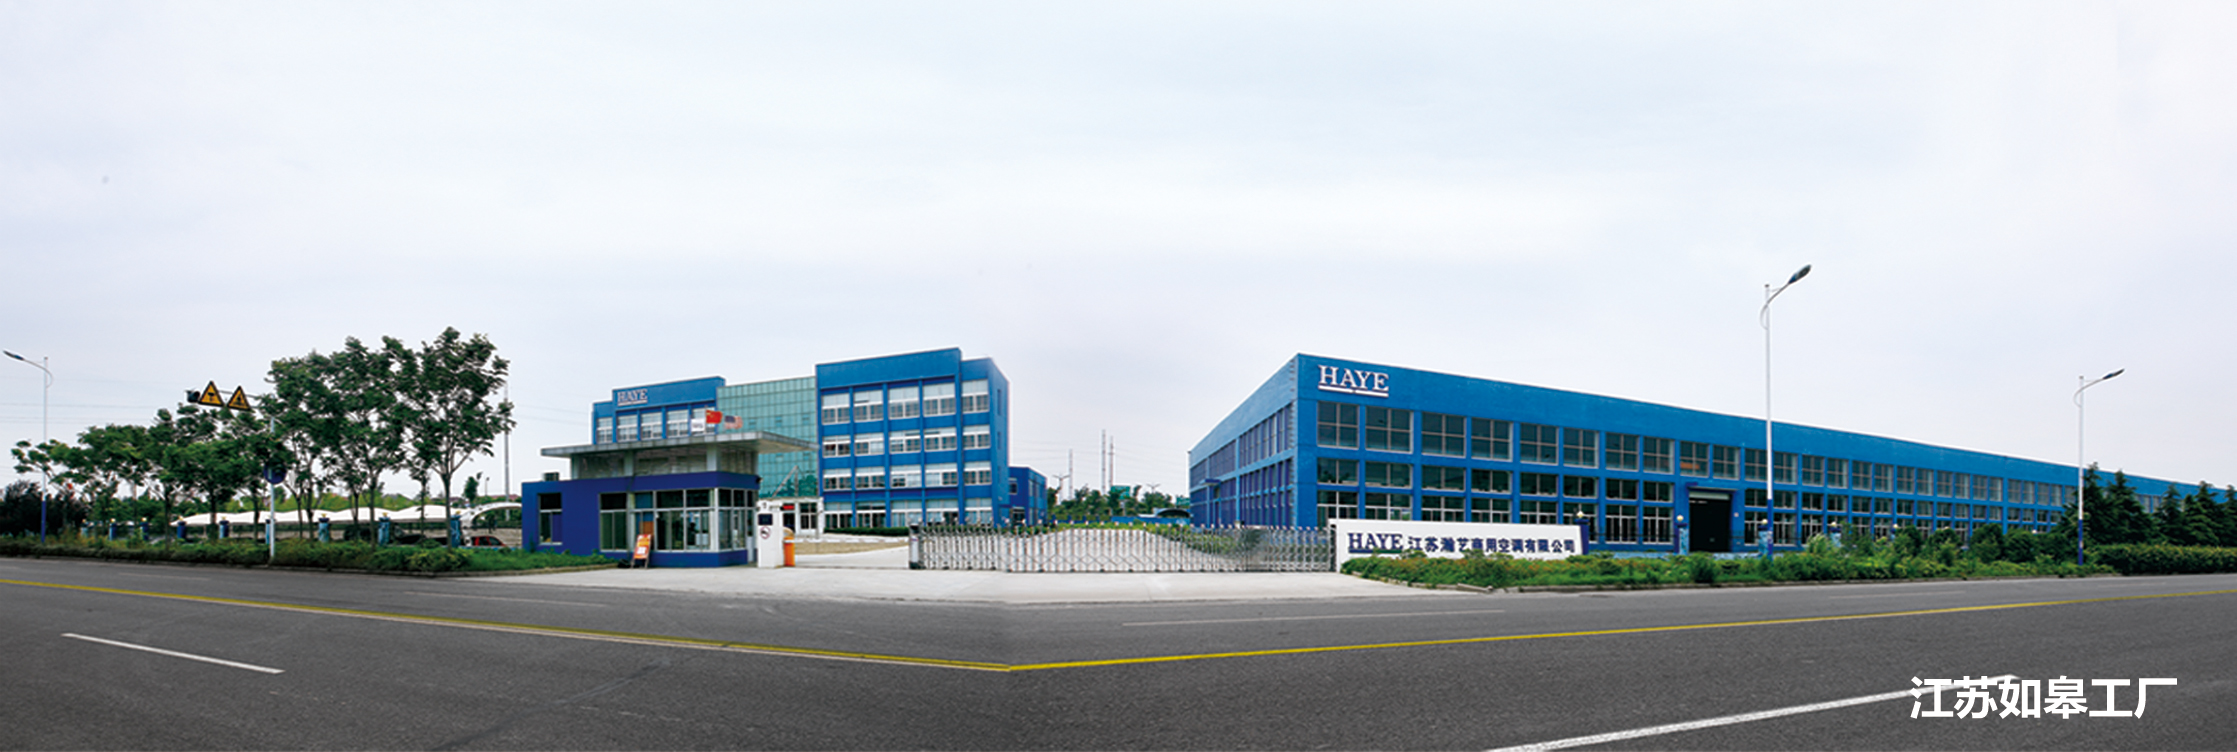  Jiangsu production base